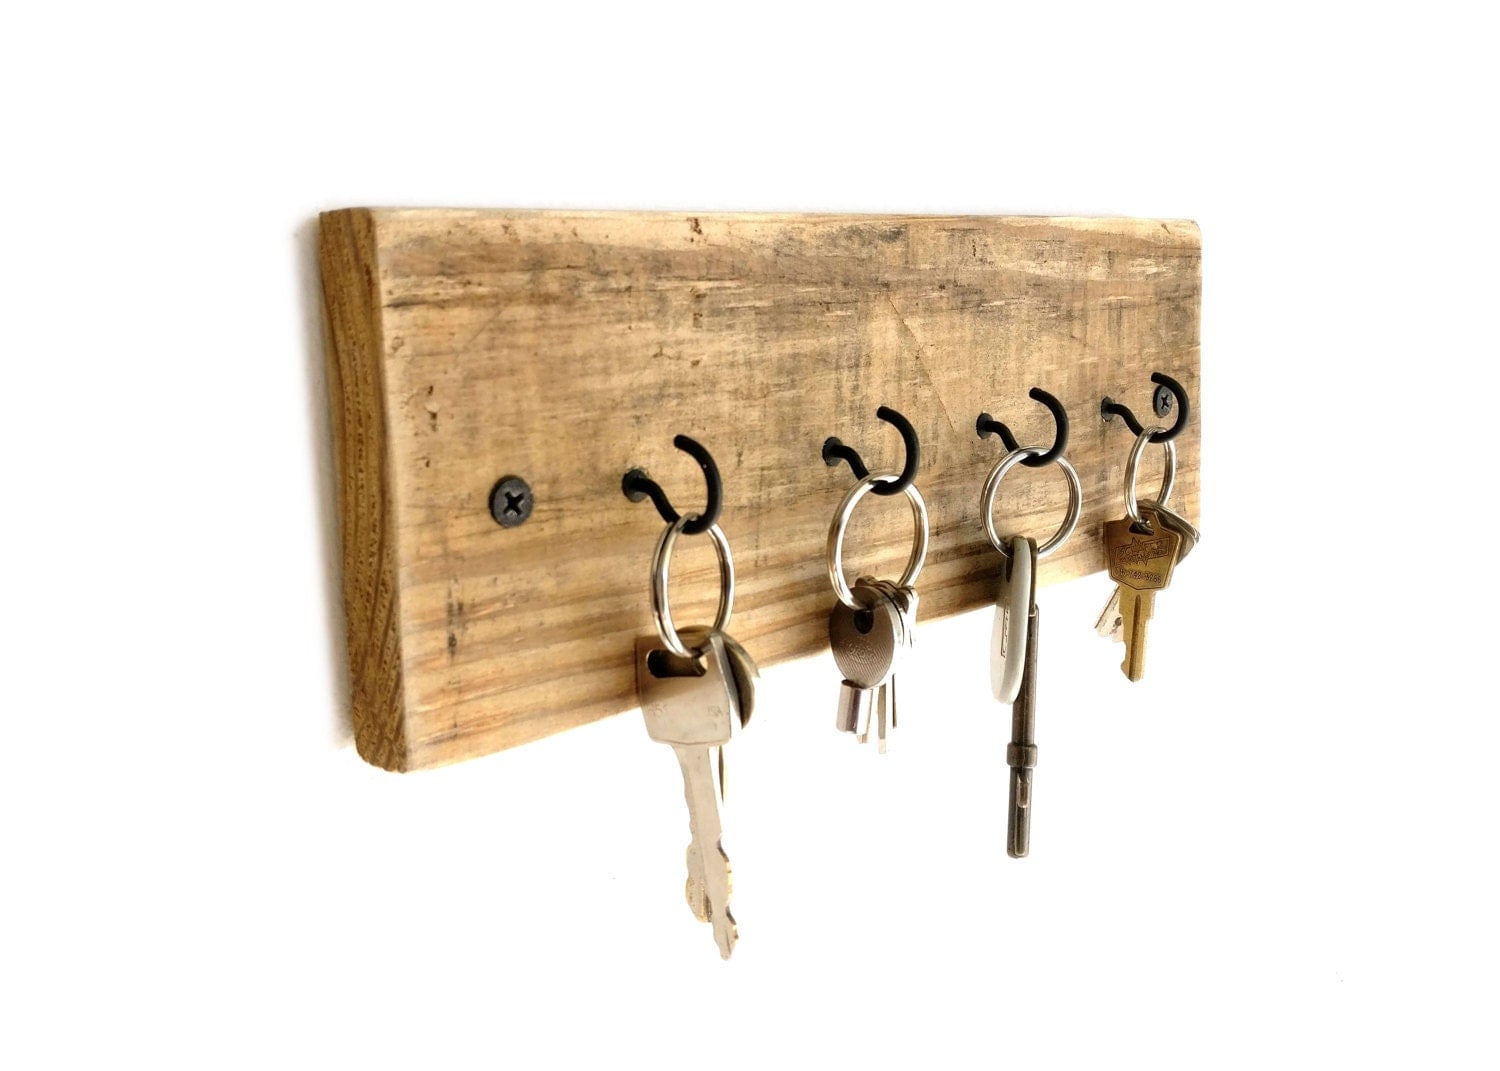 key holder shelf